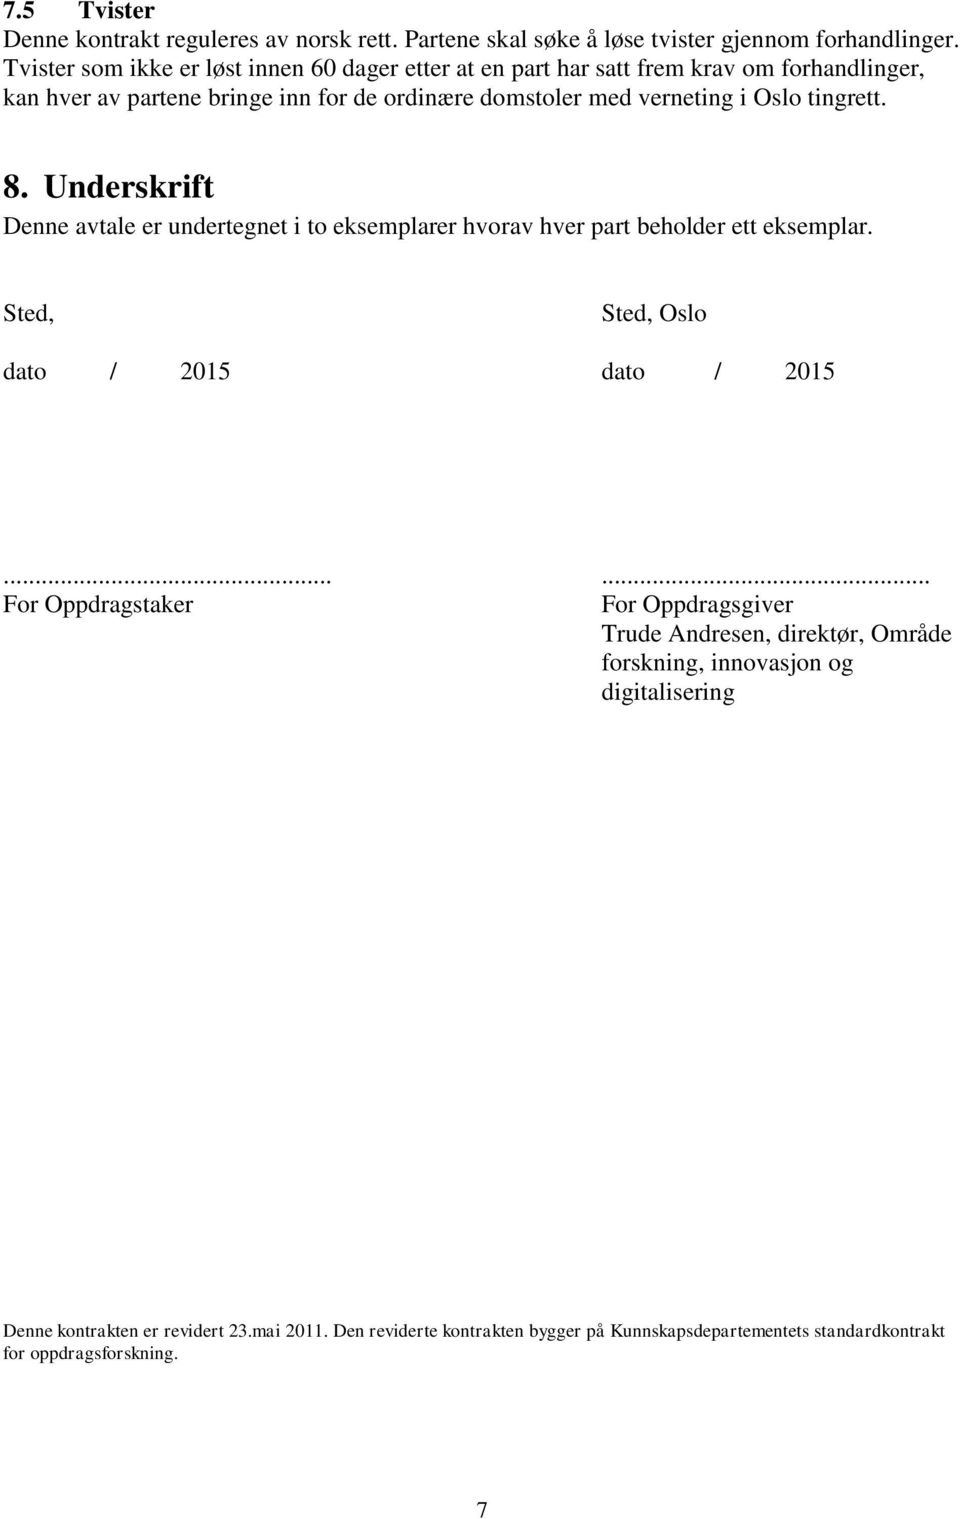 tingrett. 8. Underskrift Denne avtale er undertegnet i to eksemplarer hvorav hver part beholder ett eksemplar. Sted, Sted, Oslo dato / 2015 dato / 2015.